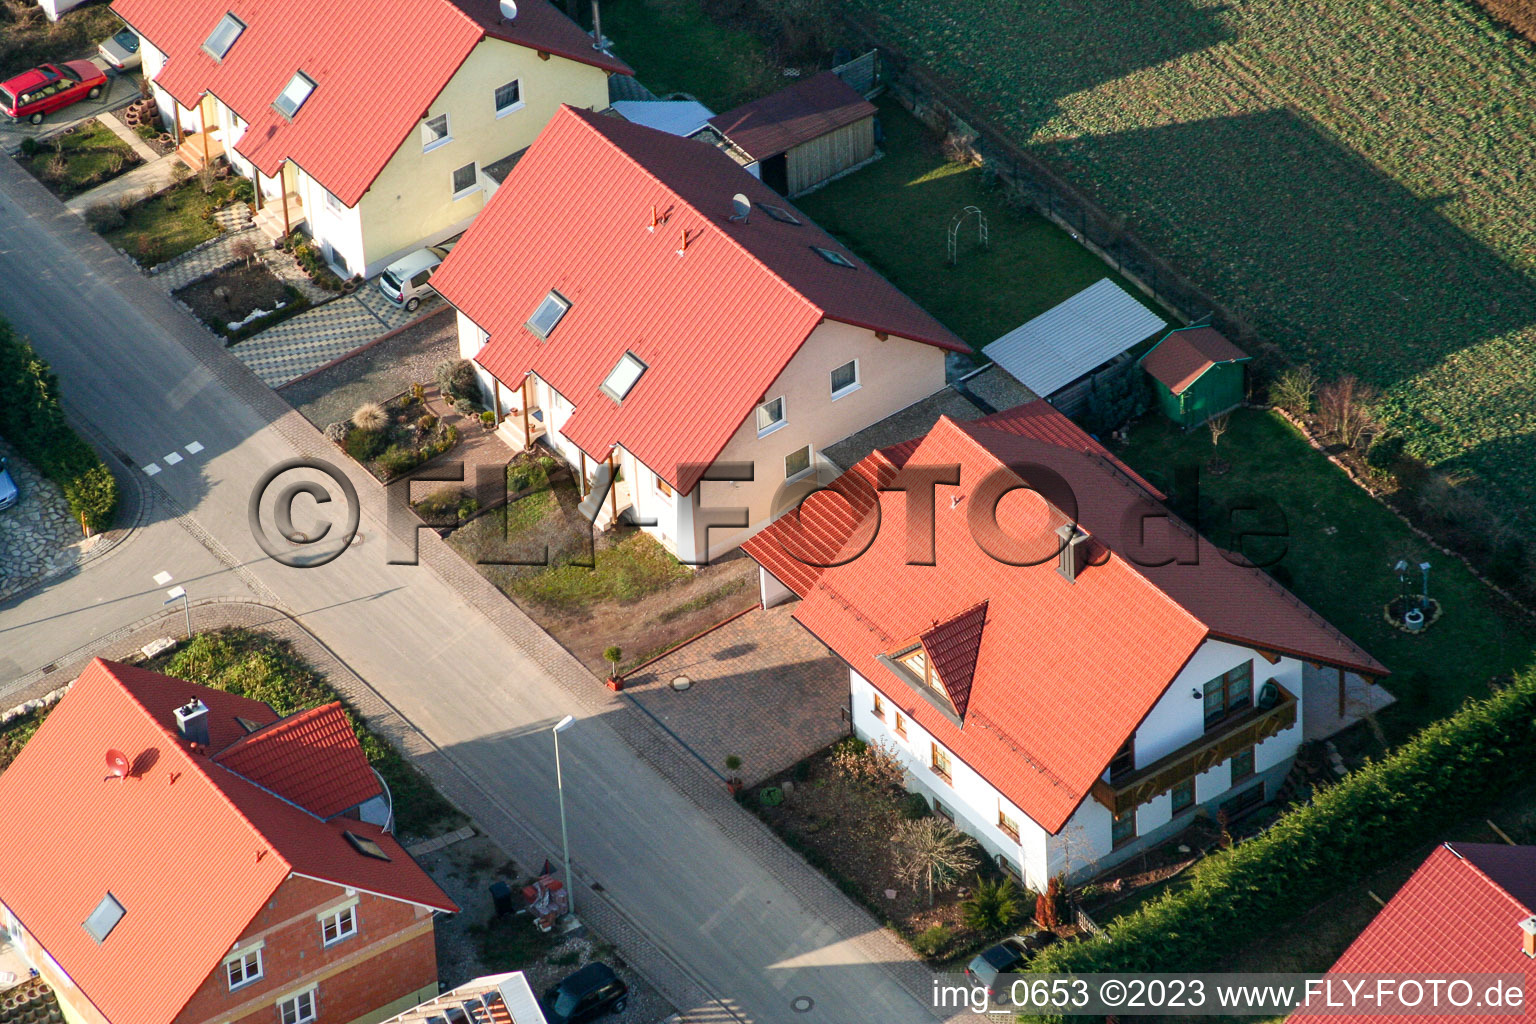 Nouvelle zone de développement à Dierbach dans le département Rhénanie-Palatinat, Allemagne vue d'en haut